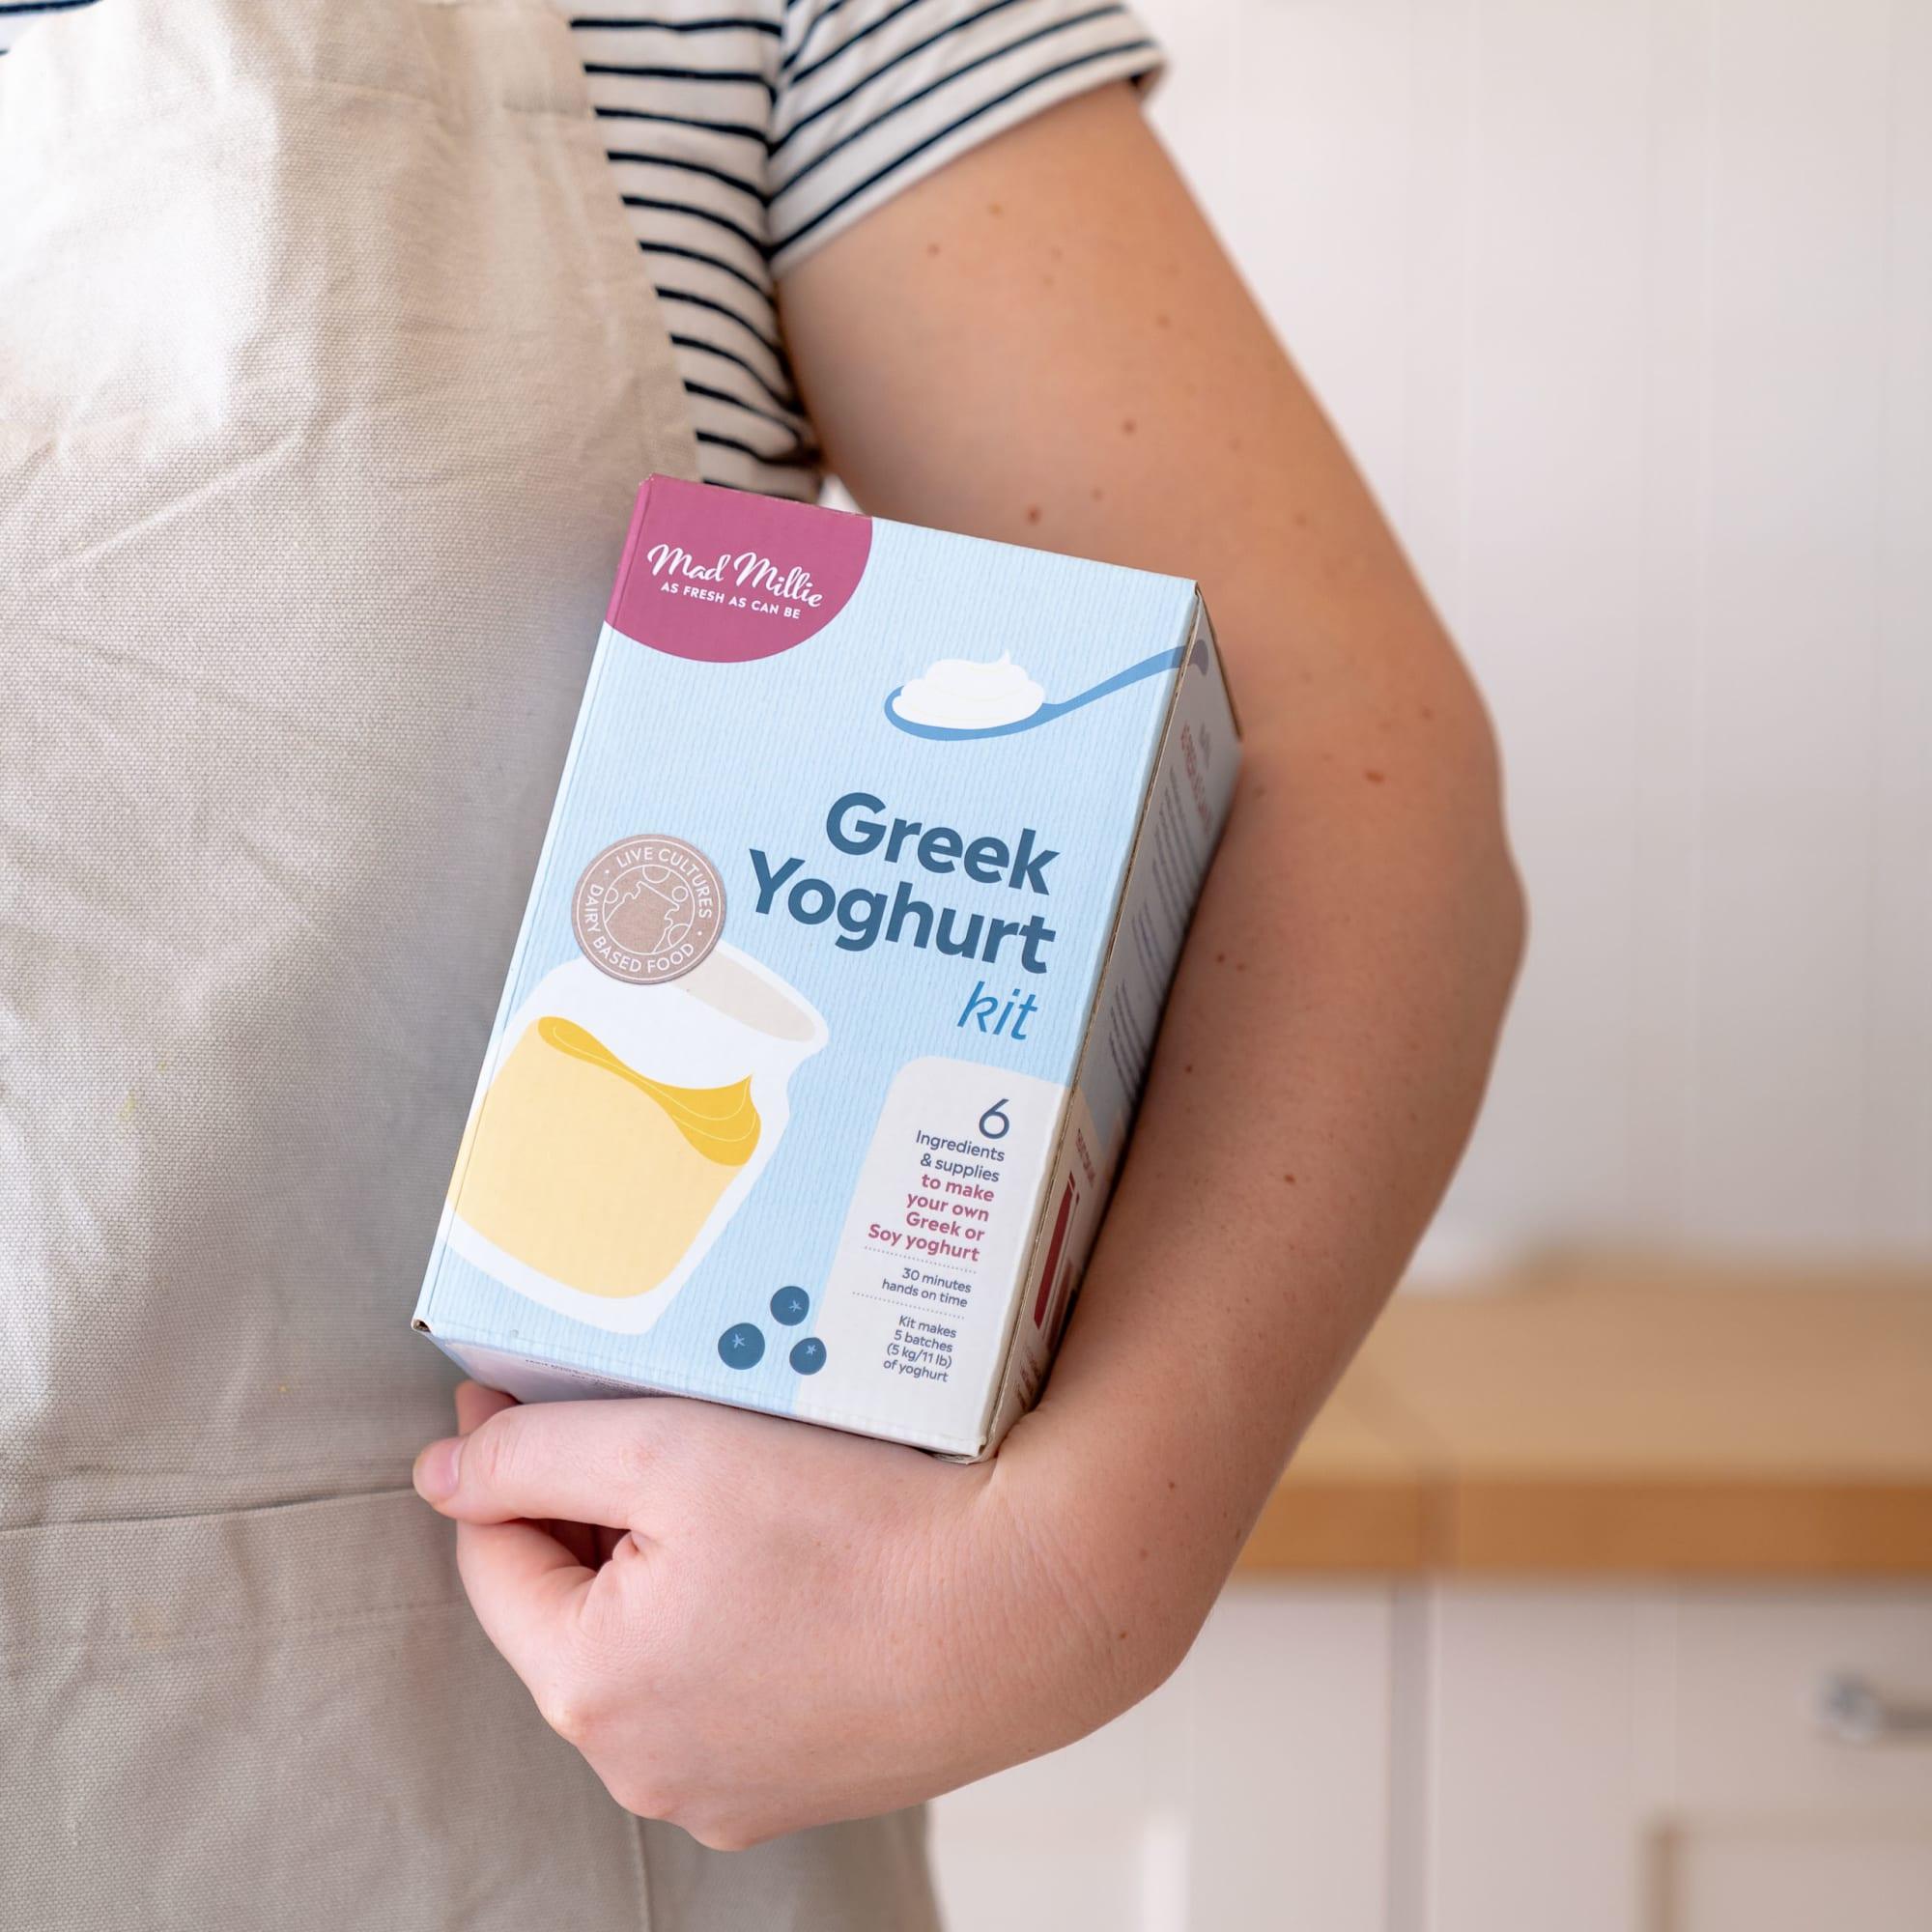 Mad Millie Greek Yoghurt Kit Image 4